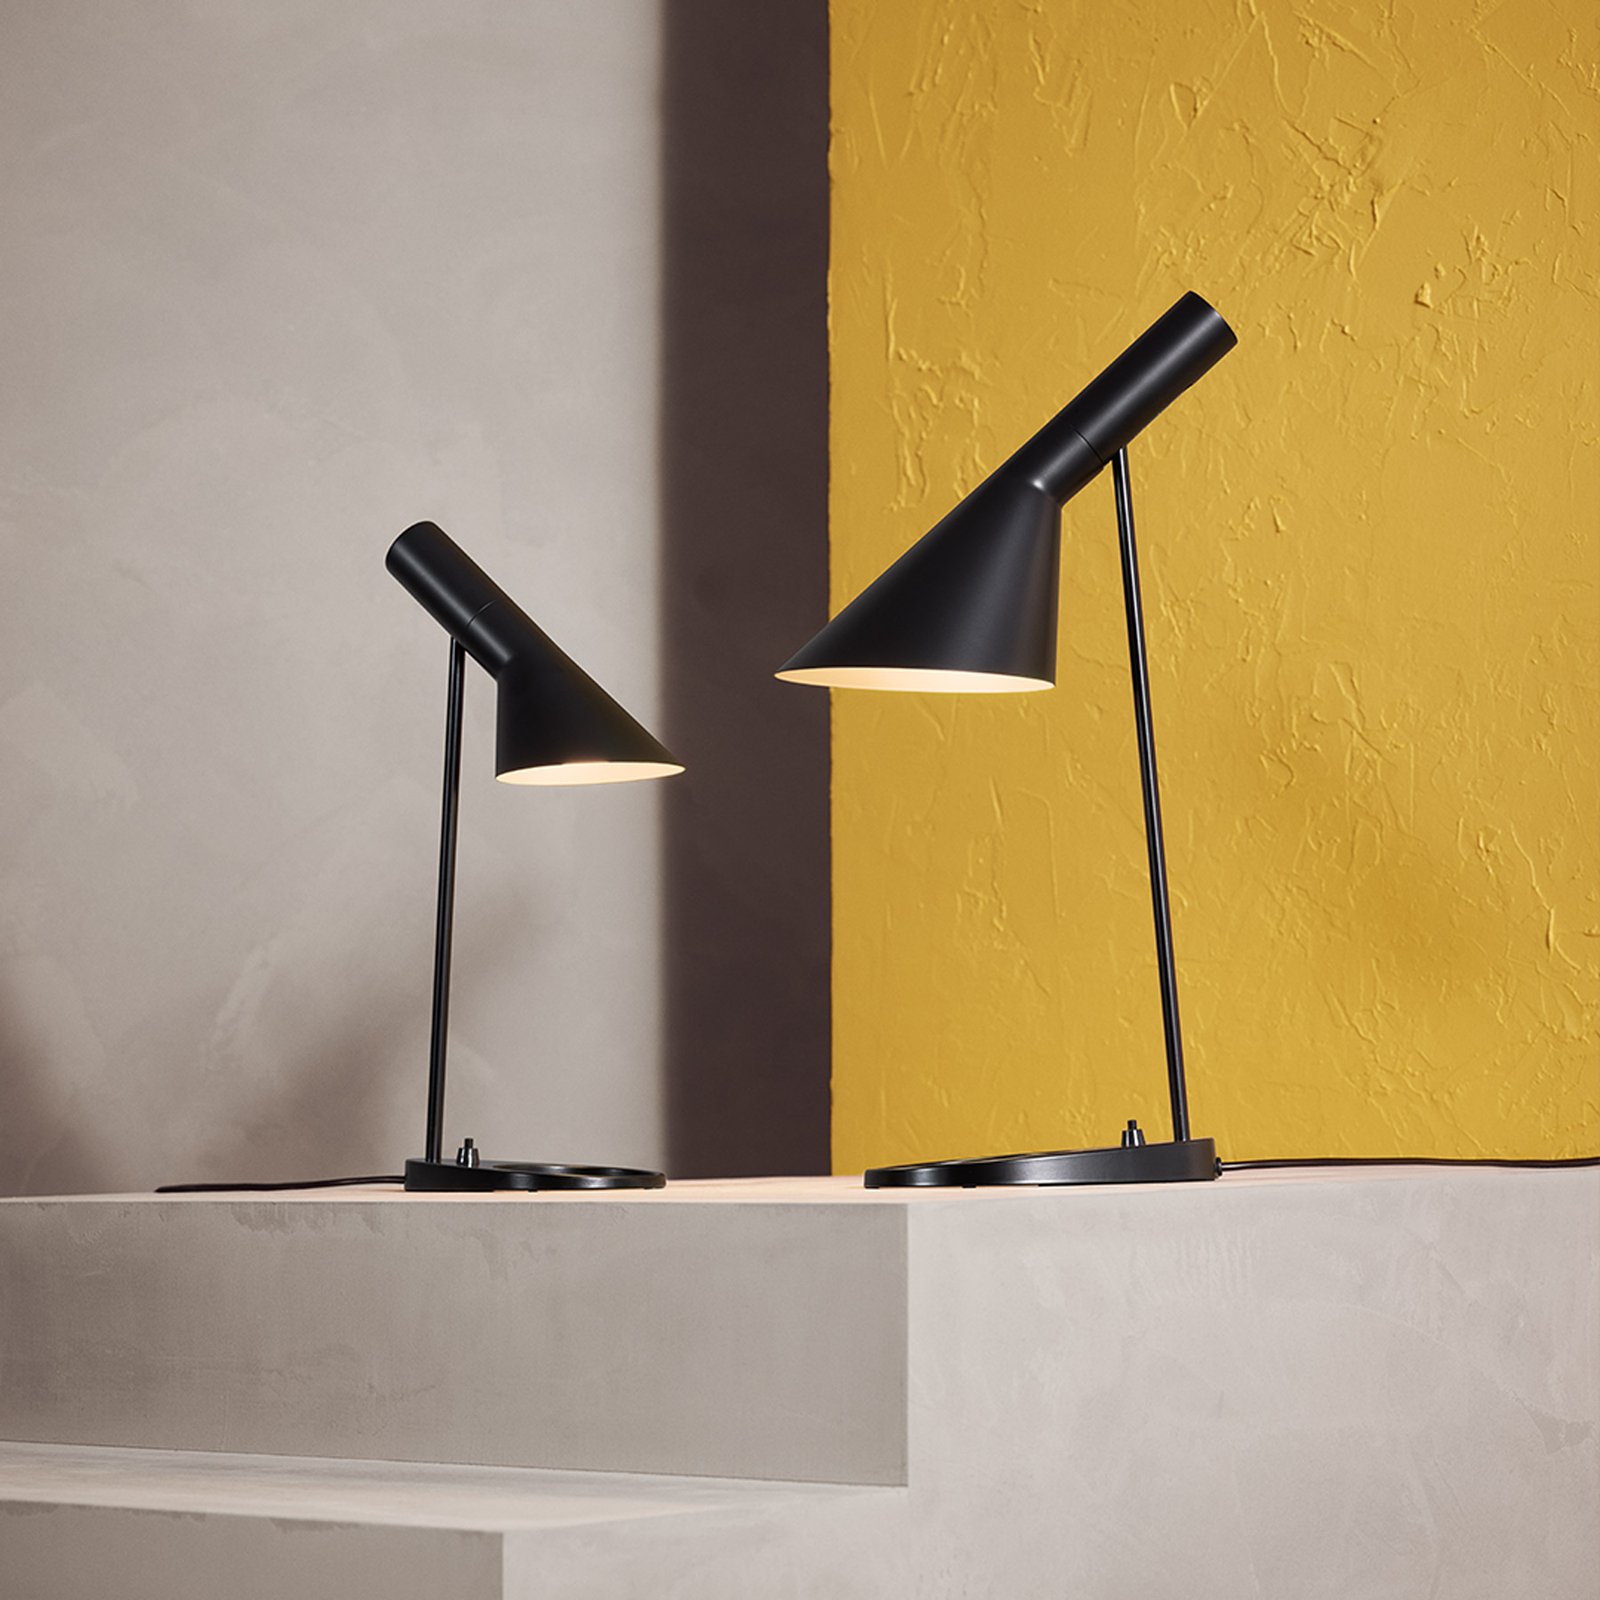 Louis Poulsen AJ Mini stolní lampa, černá